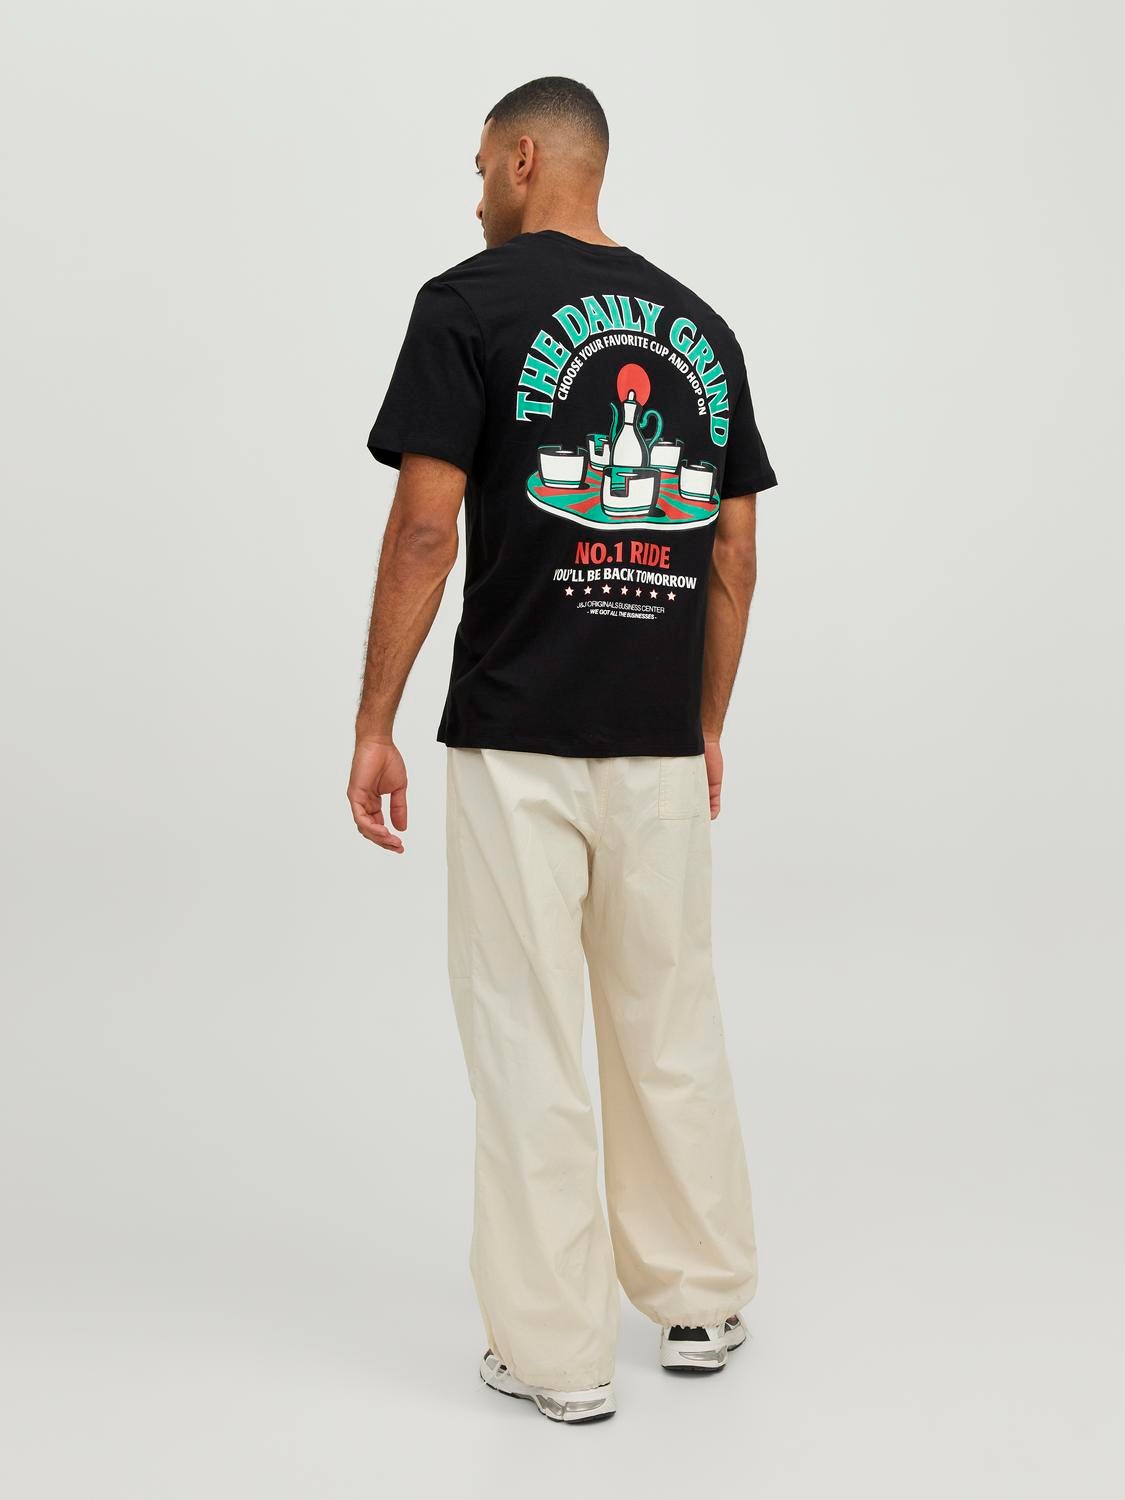 Jack & Jones Gedruckt Rundhals T-shirt -Black - 12244559